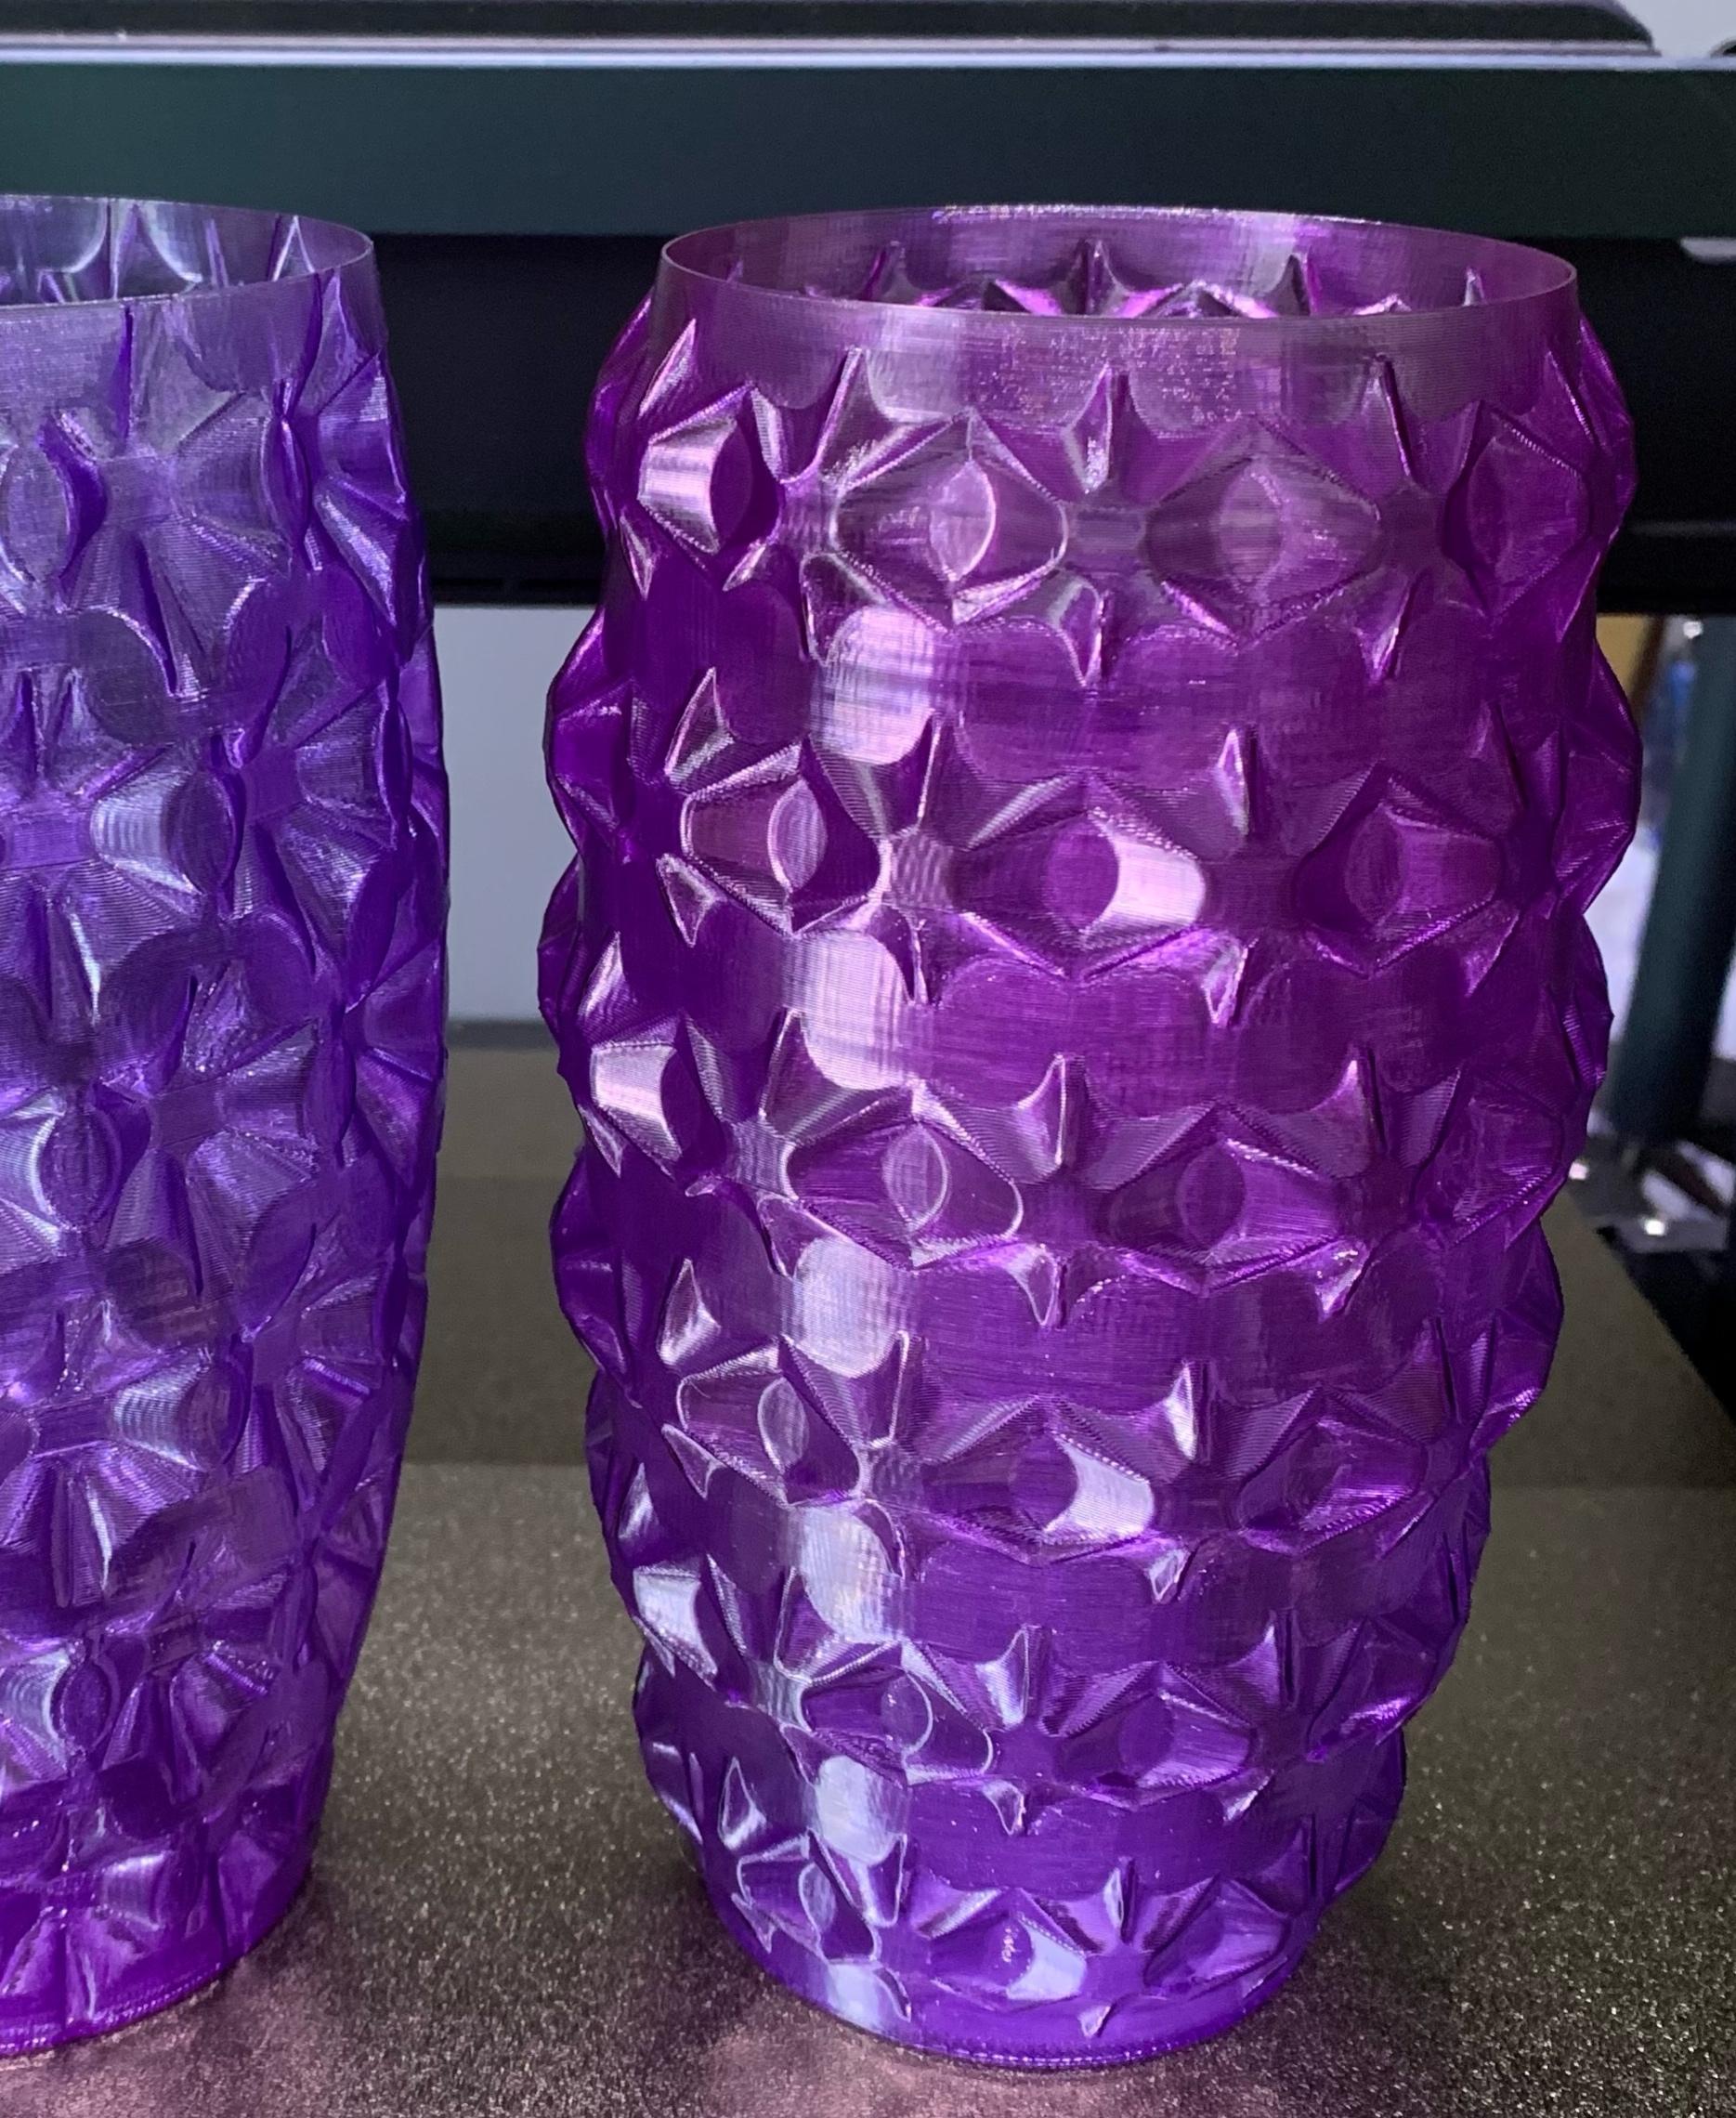 Outward Star Vase - Vase Mode - 3d model